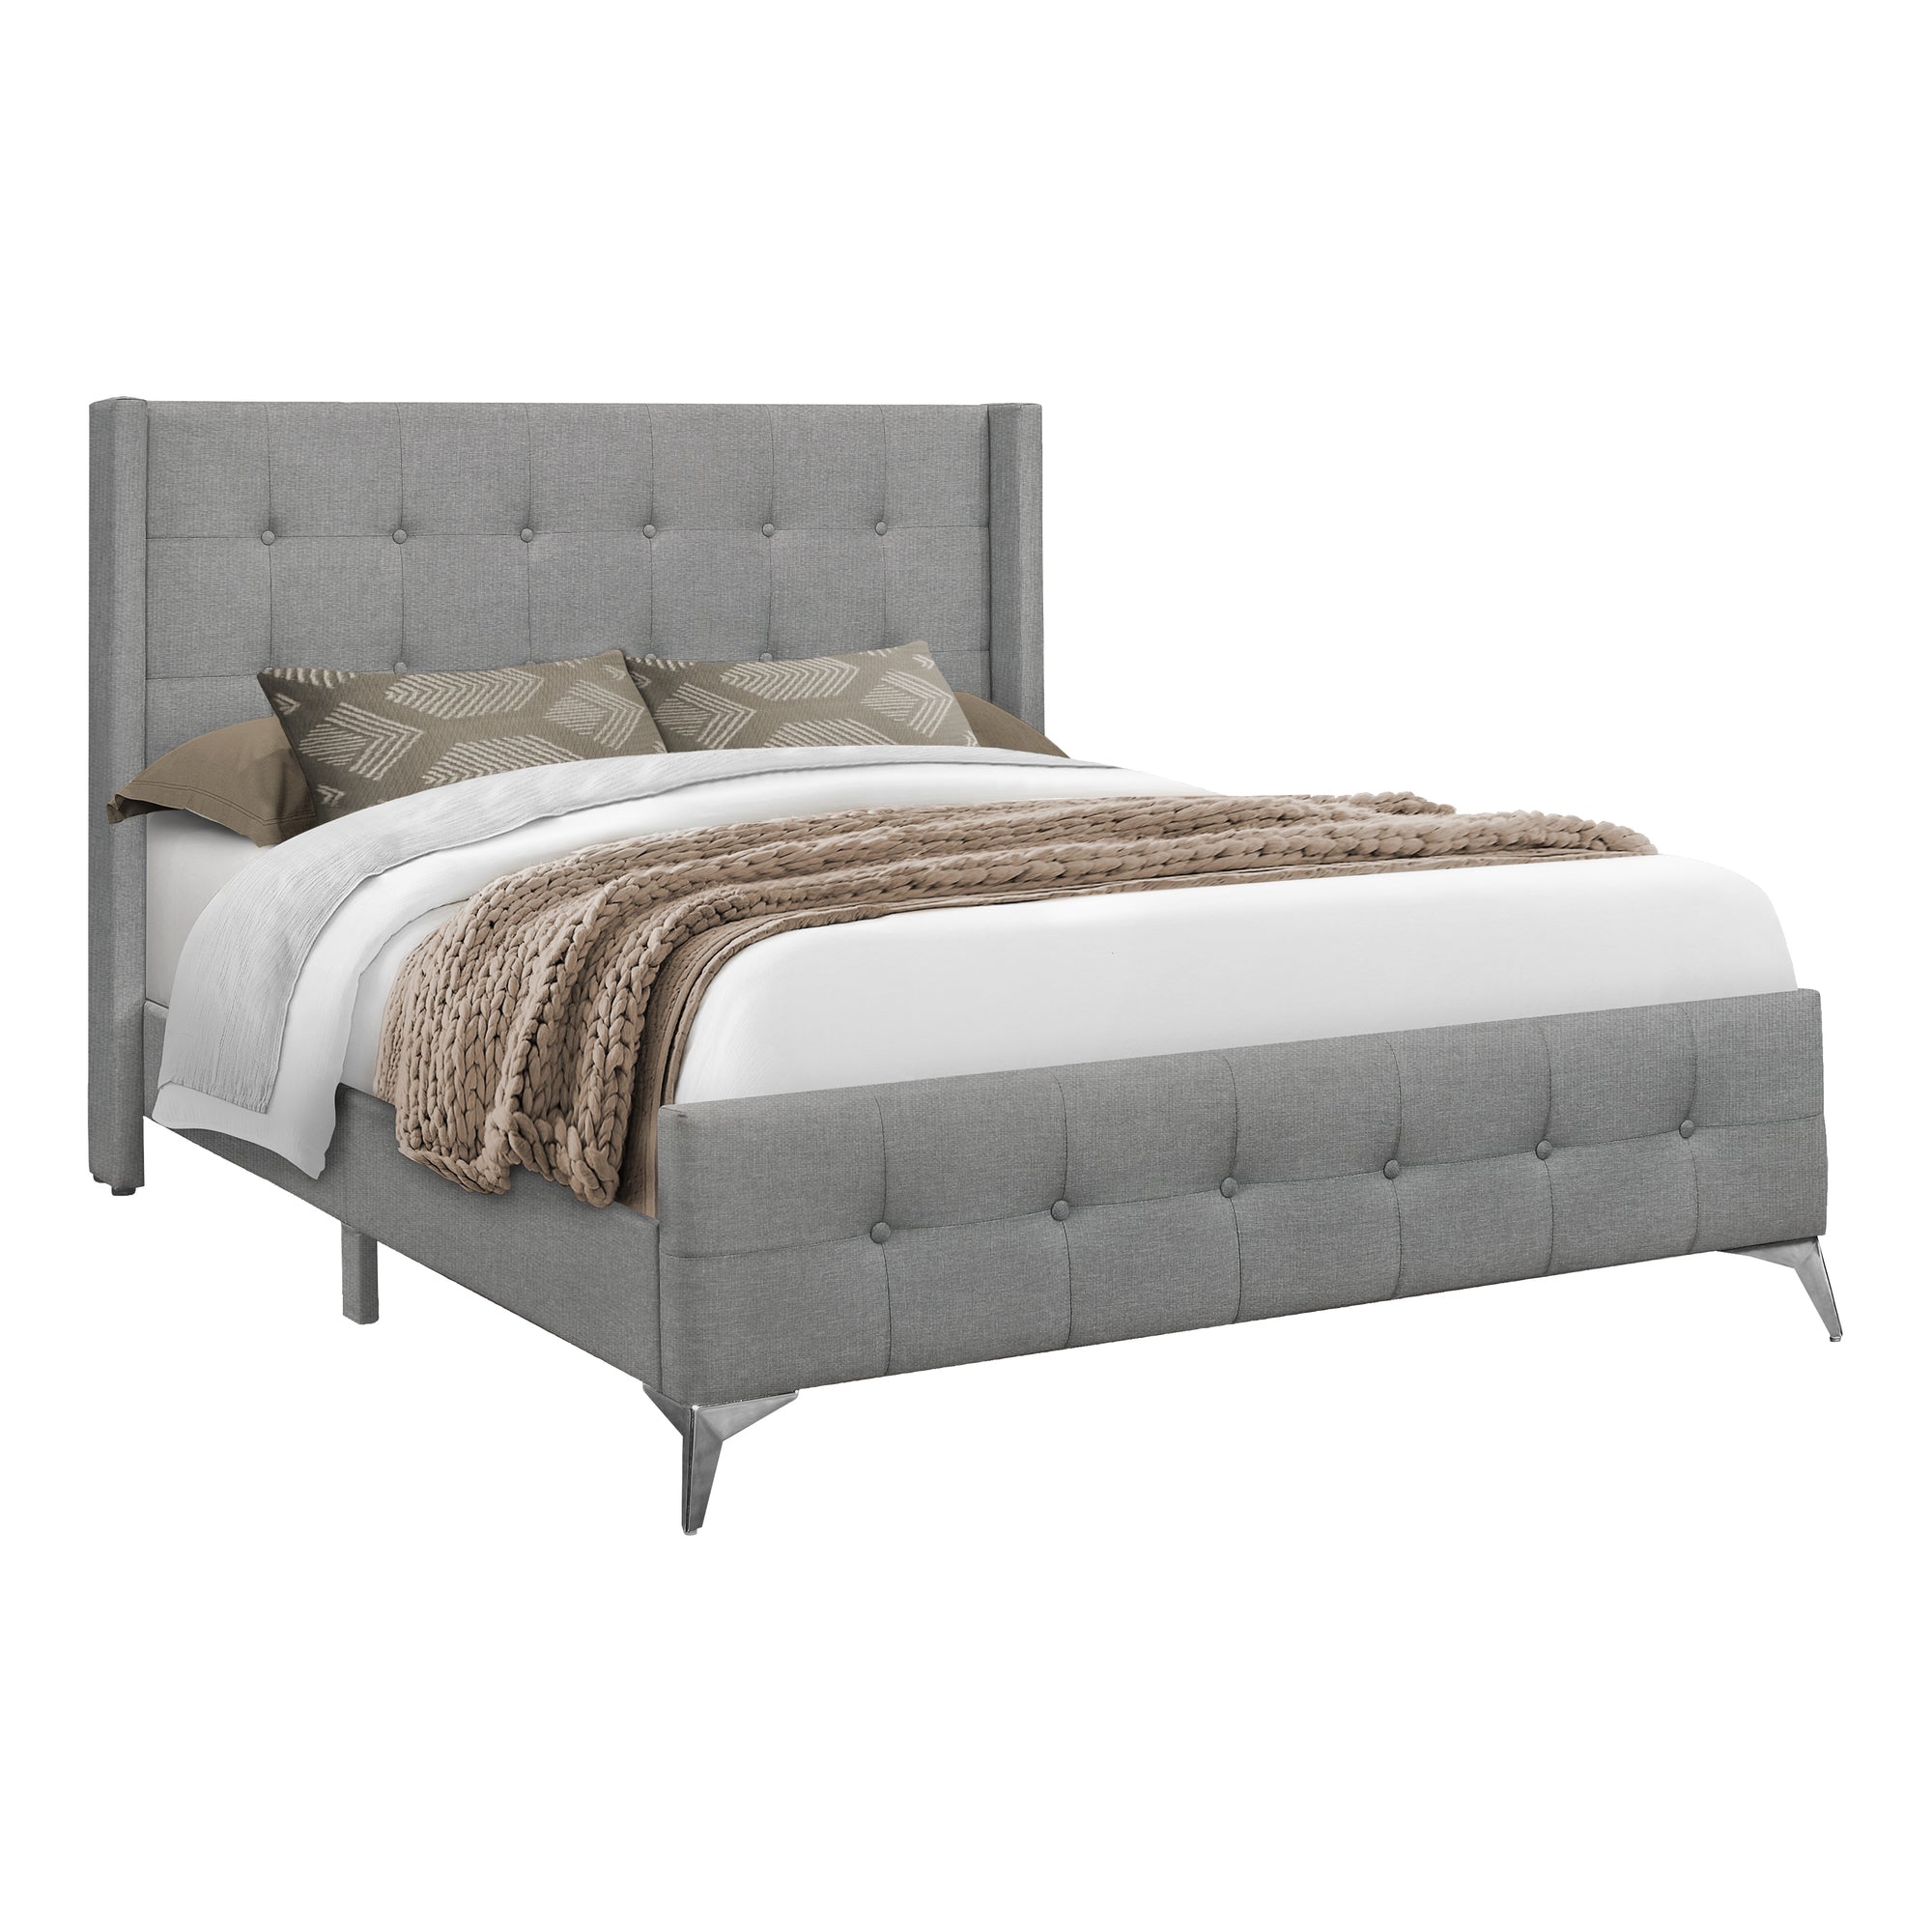 MN-916040Q    Bed, Queen Size, Bedroom, Upholstered, Grey Linen Look, Chrome Metal Legs